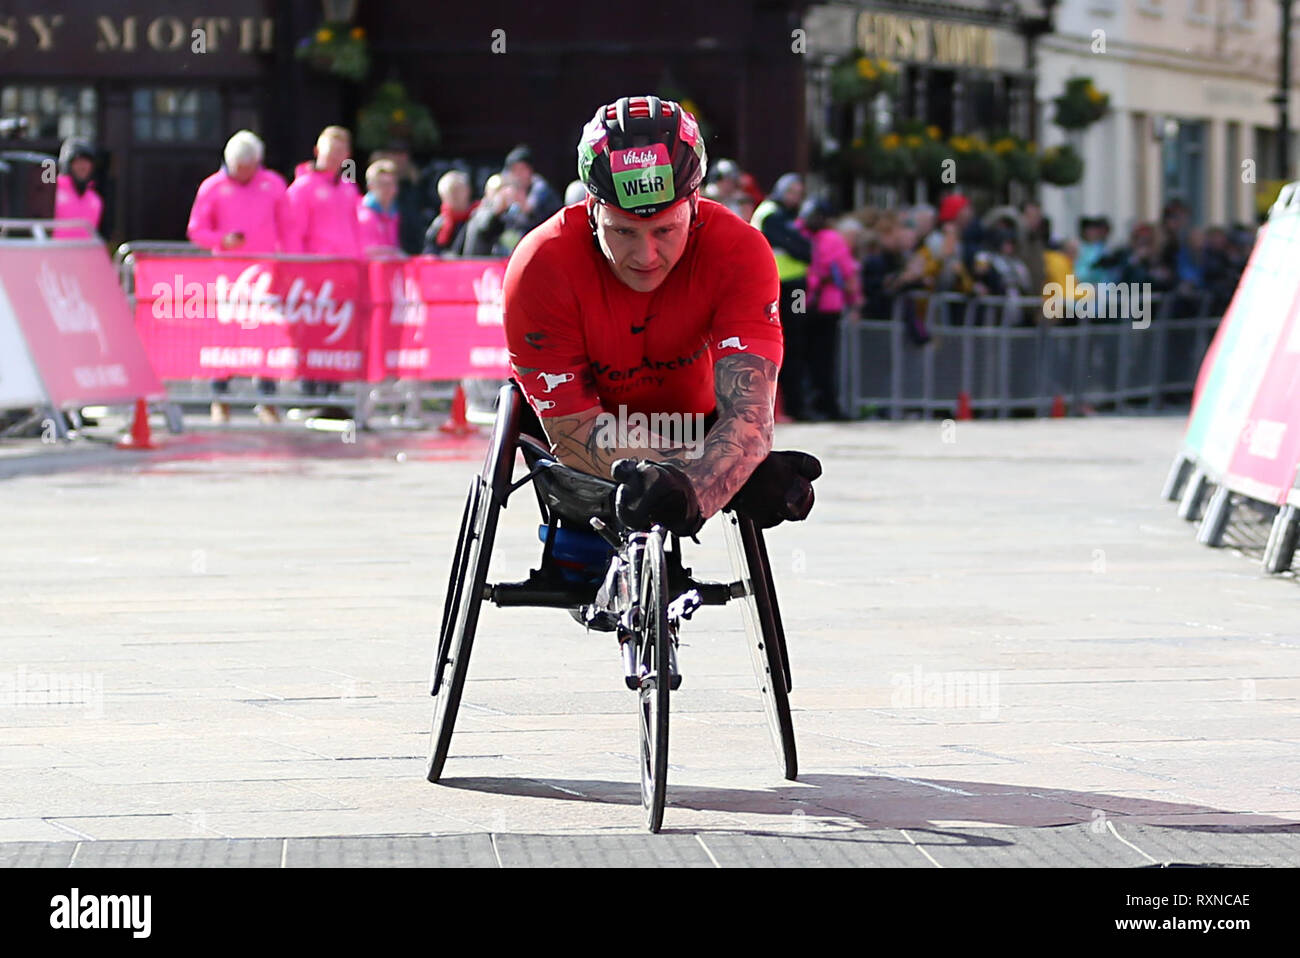 David Weir remporte la course en fauteuil roulant pour hommes au cours de l'épanouissement demi à Londres. Banque D'Images